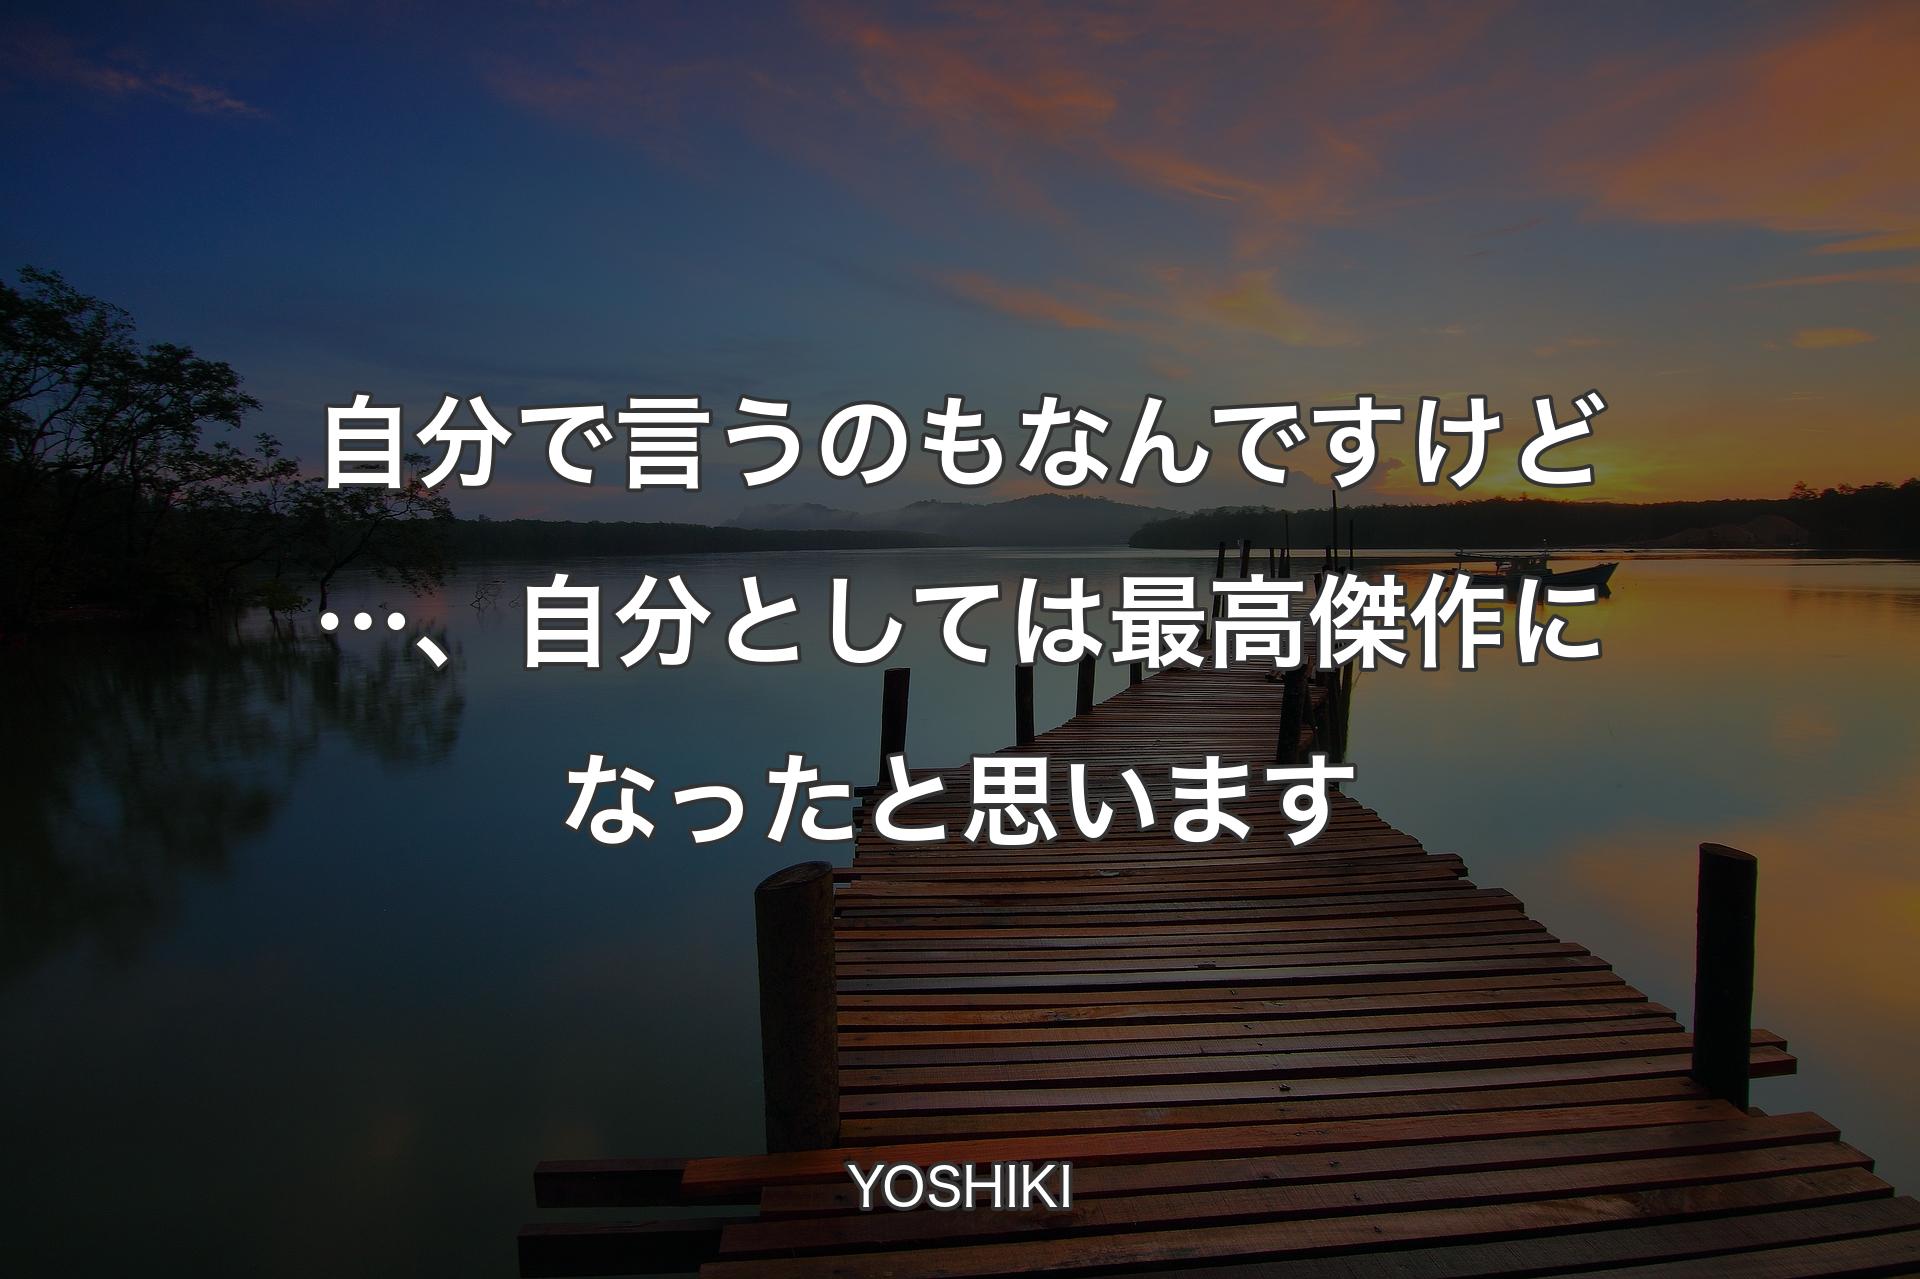 【背景3】自分で言うのもなんですけど…、自分としては最高傑作になったと思います - YOSHIKI